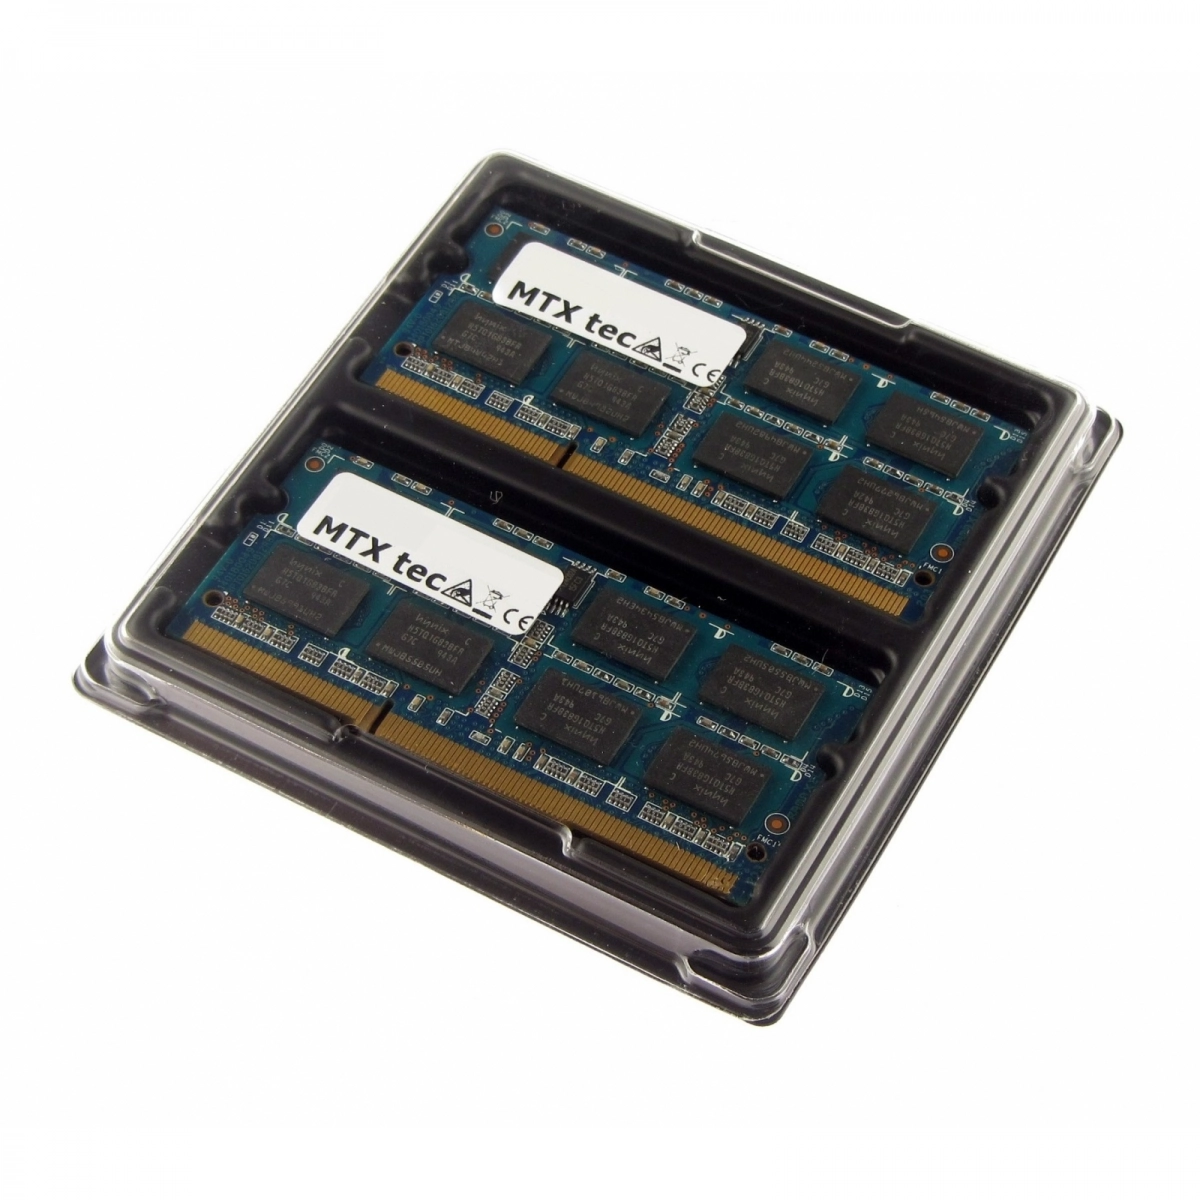 MTXtec 16GB Kit 2x 8GB DDR3L 1600MHz SODIMM DDR3 PC3-12800, 204 Pin, 1.35V RAM Laptop-Speicher